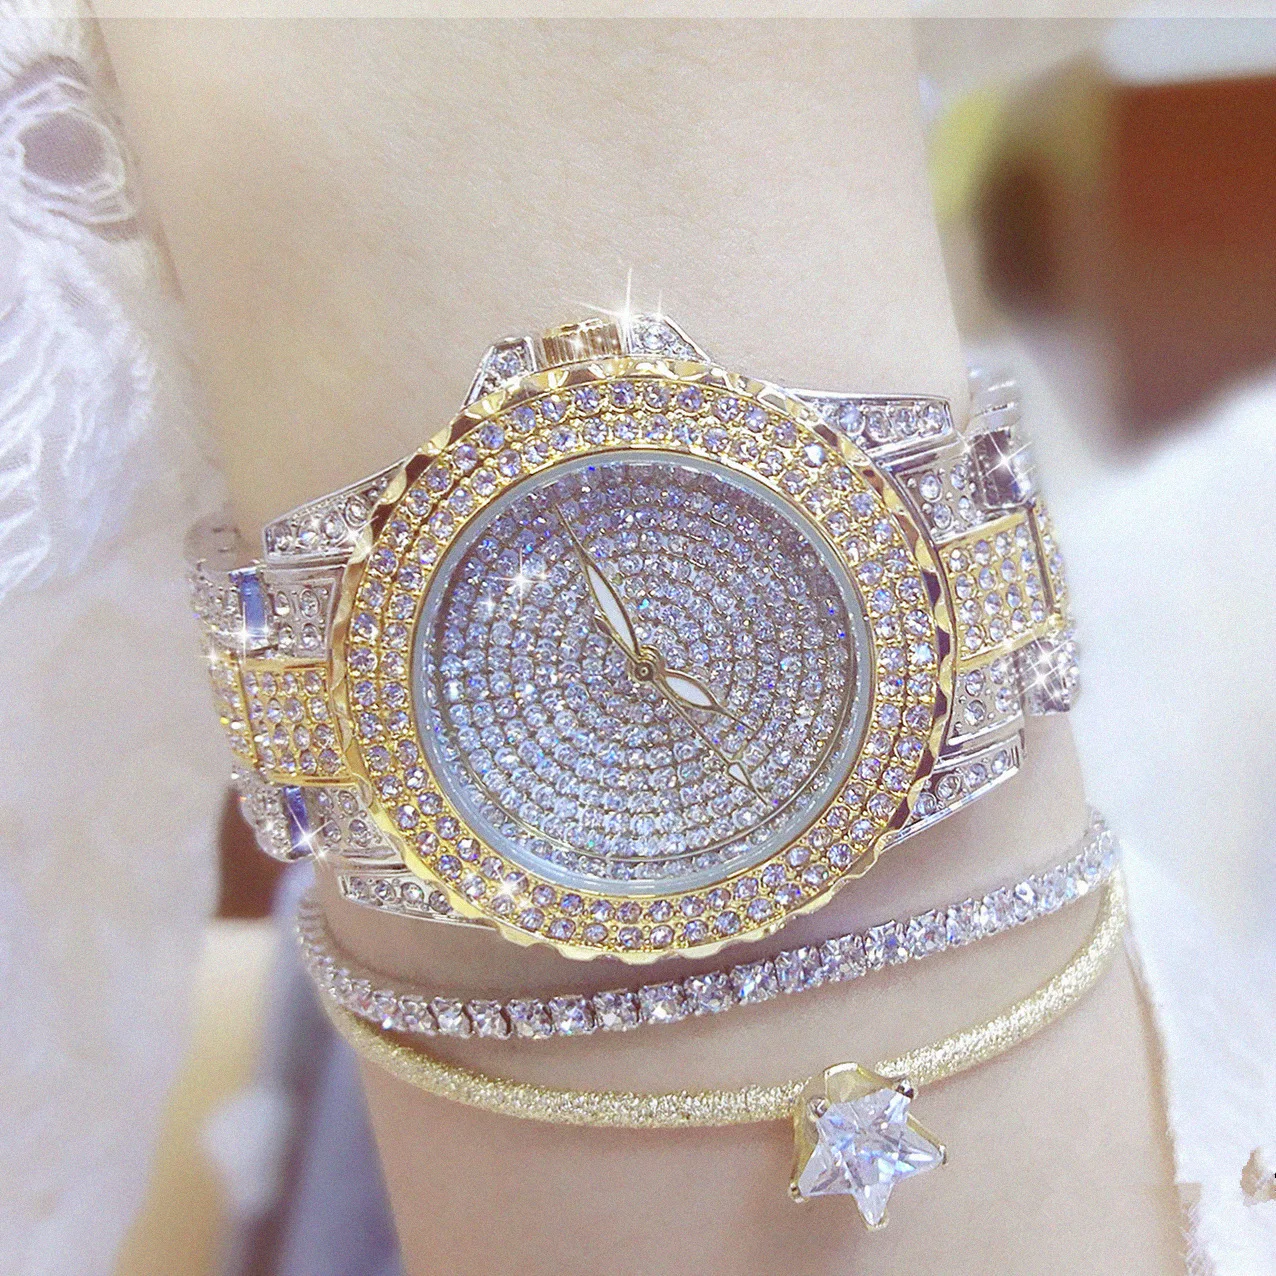 

BS Women Gold Watches 1427 Fashion Elegant Lady Dress Watch Casual Female Wristwatch Rhinestone Bracelet Reloje Mujer 2021 New